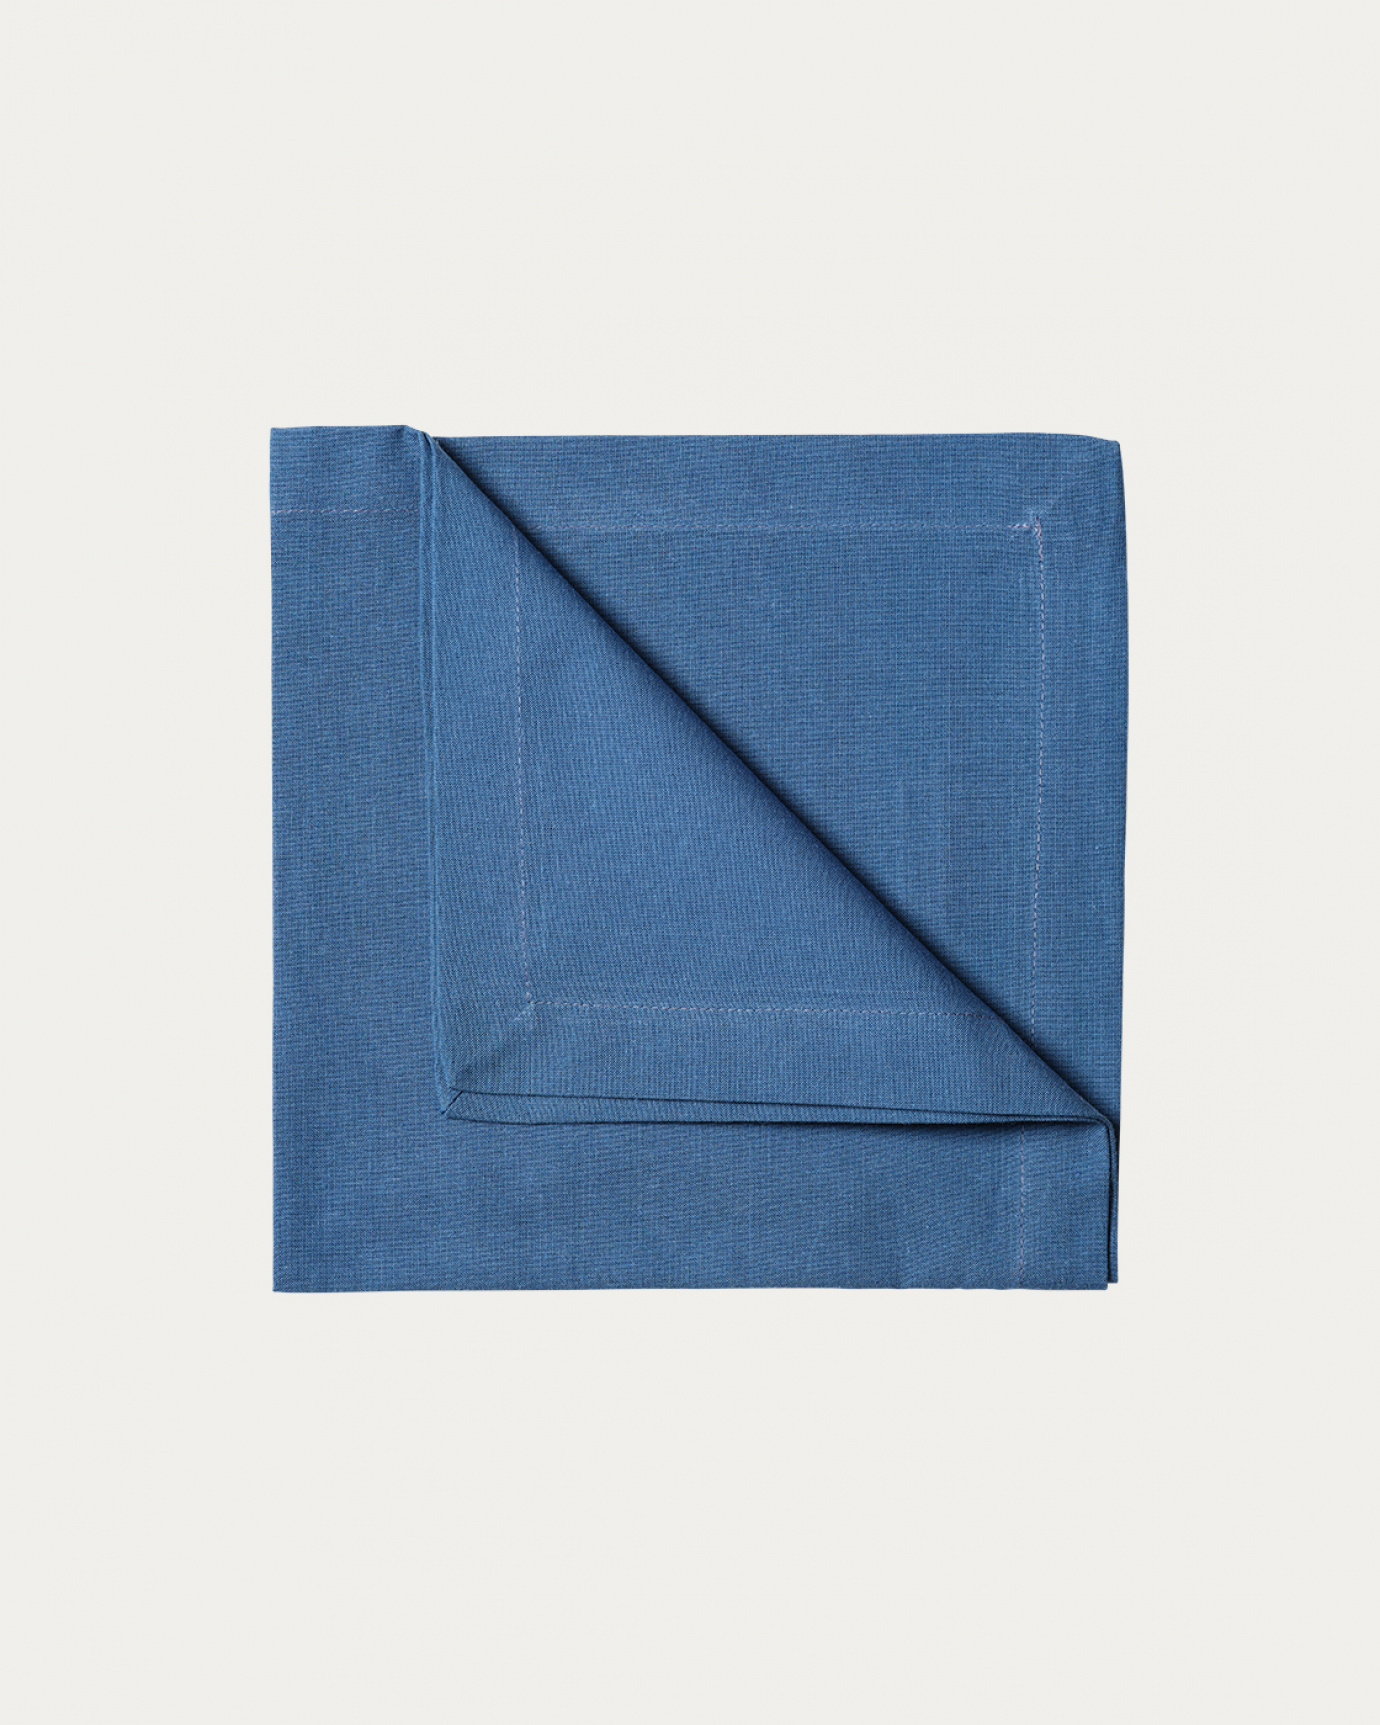 Produktbild tiefseeblau ROBERT Serviette aus weicher Baumwolle von LINUM DESIGN. Größe 45x45 cm und in 4er-Pack verkauft.